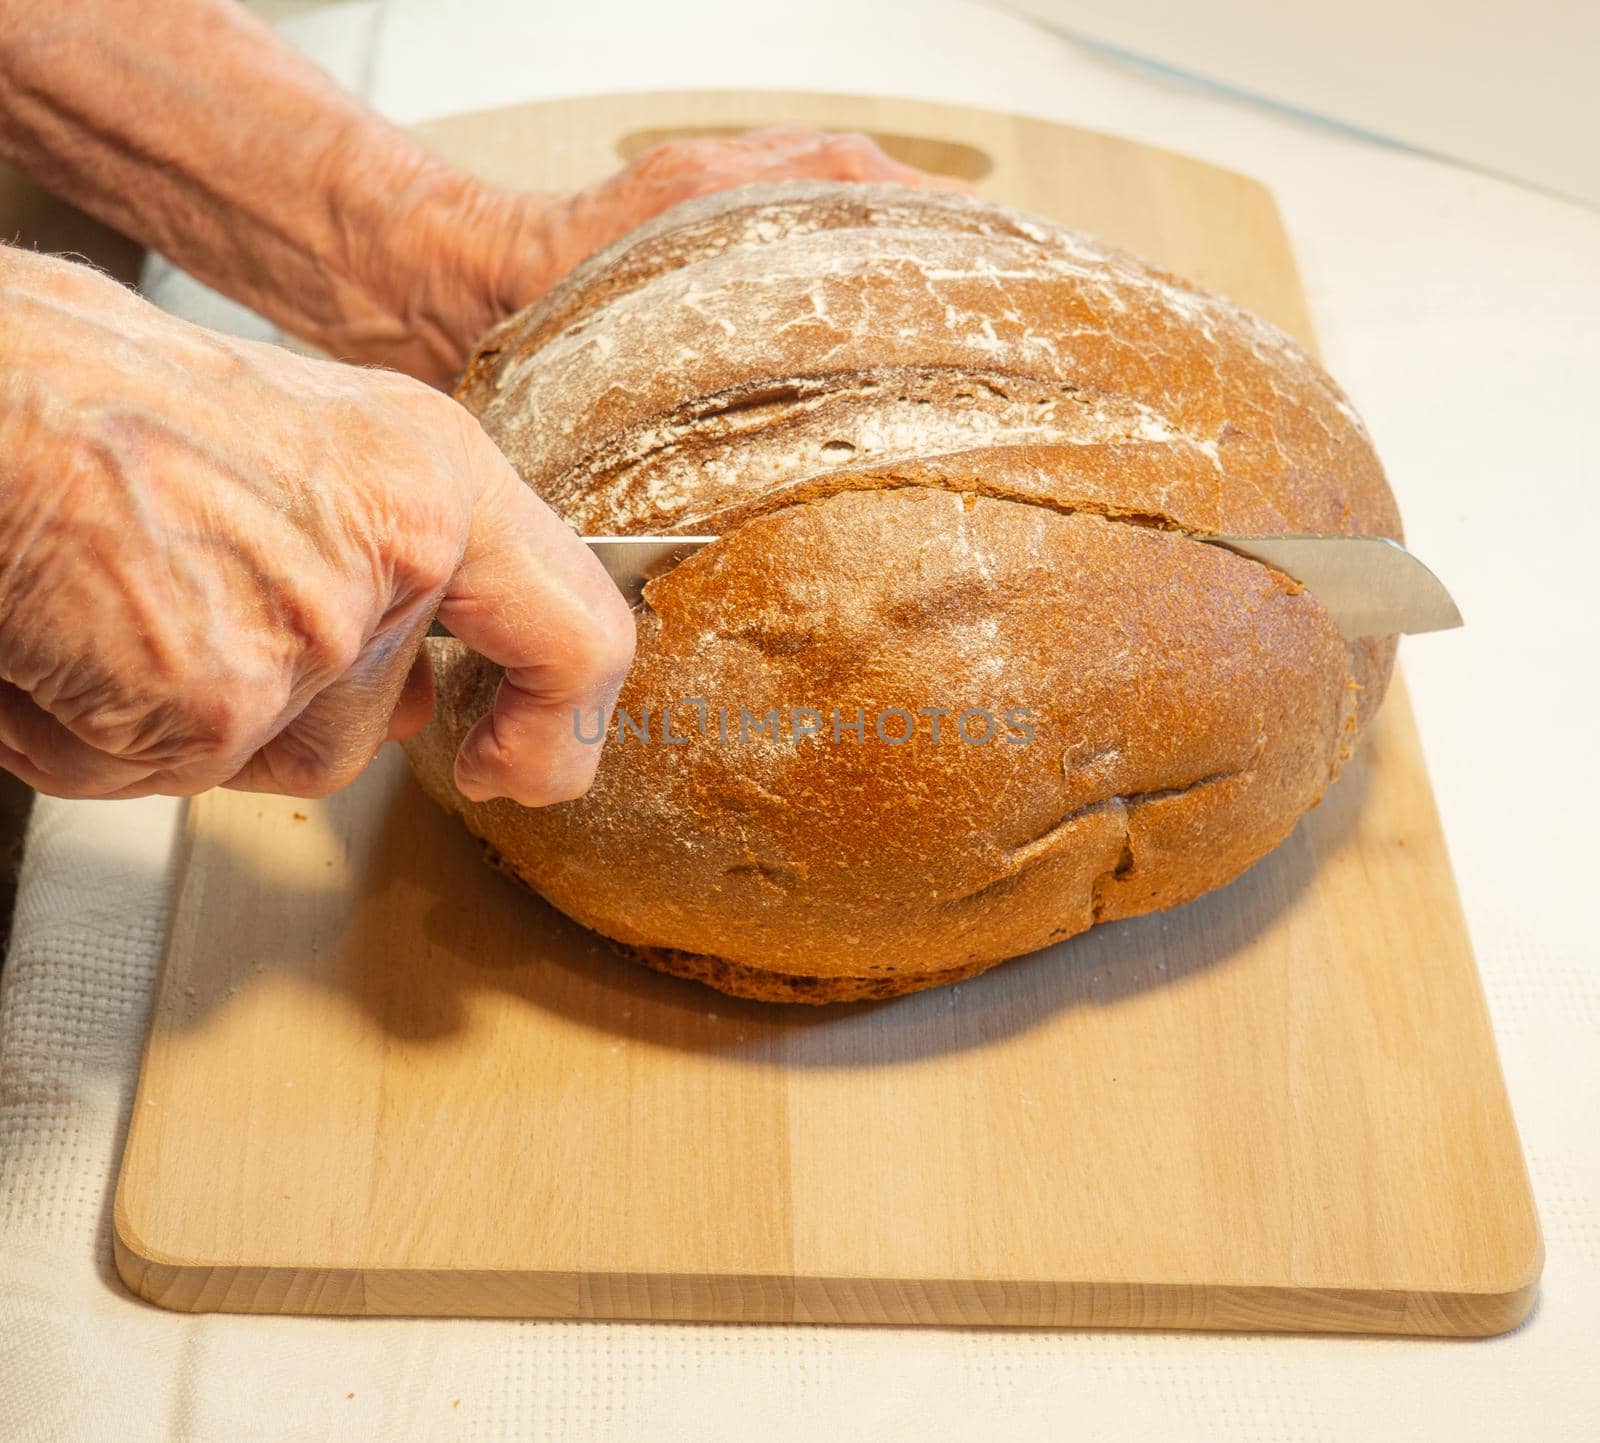 Elderly woman's hands cut round rye bread in flour on kitchen board
